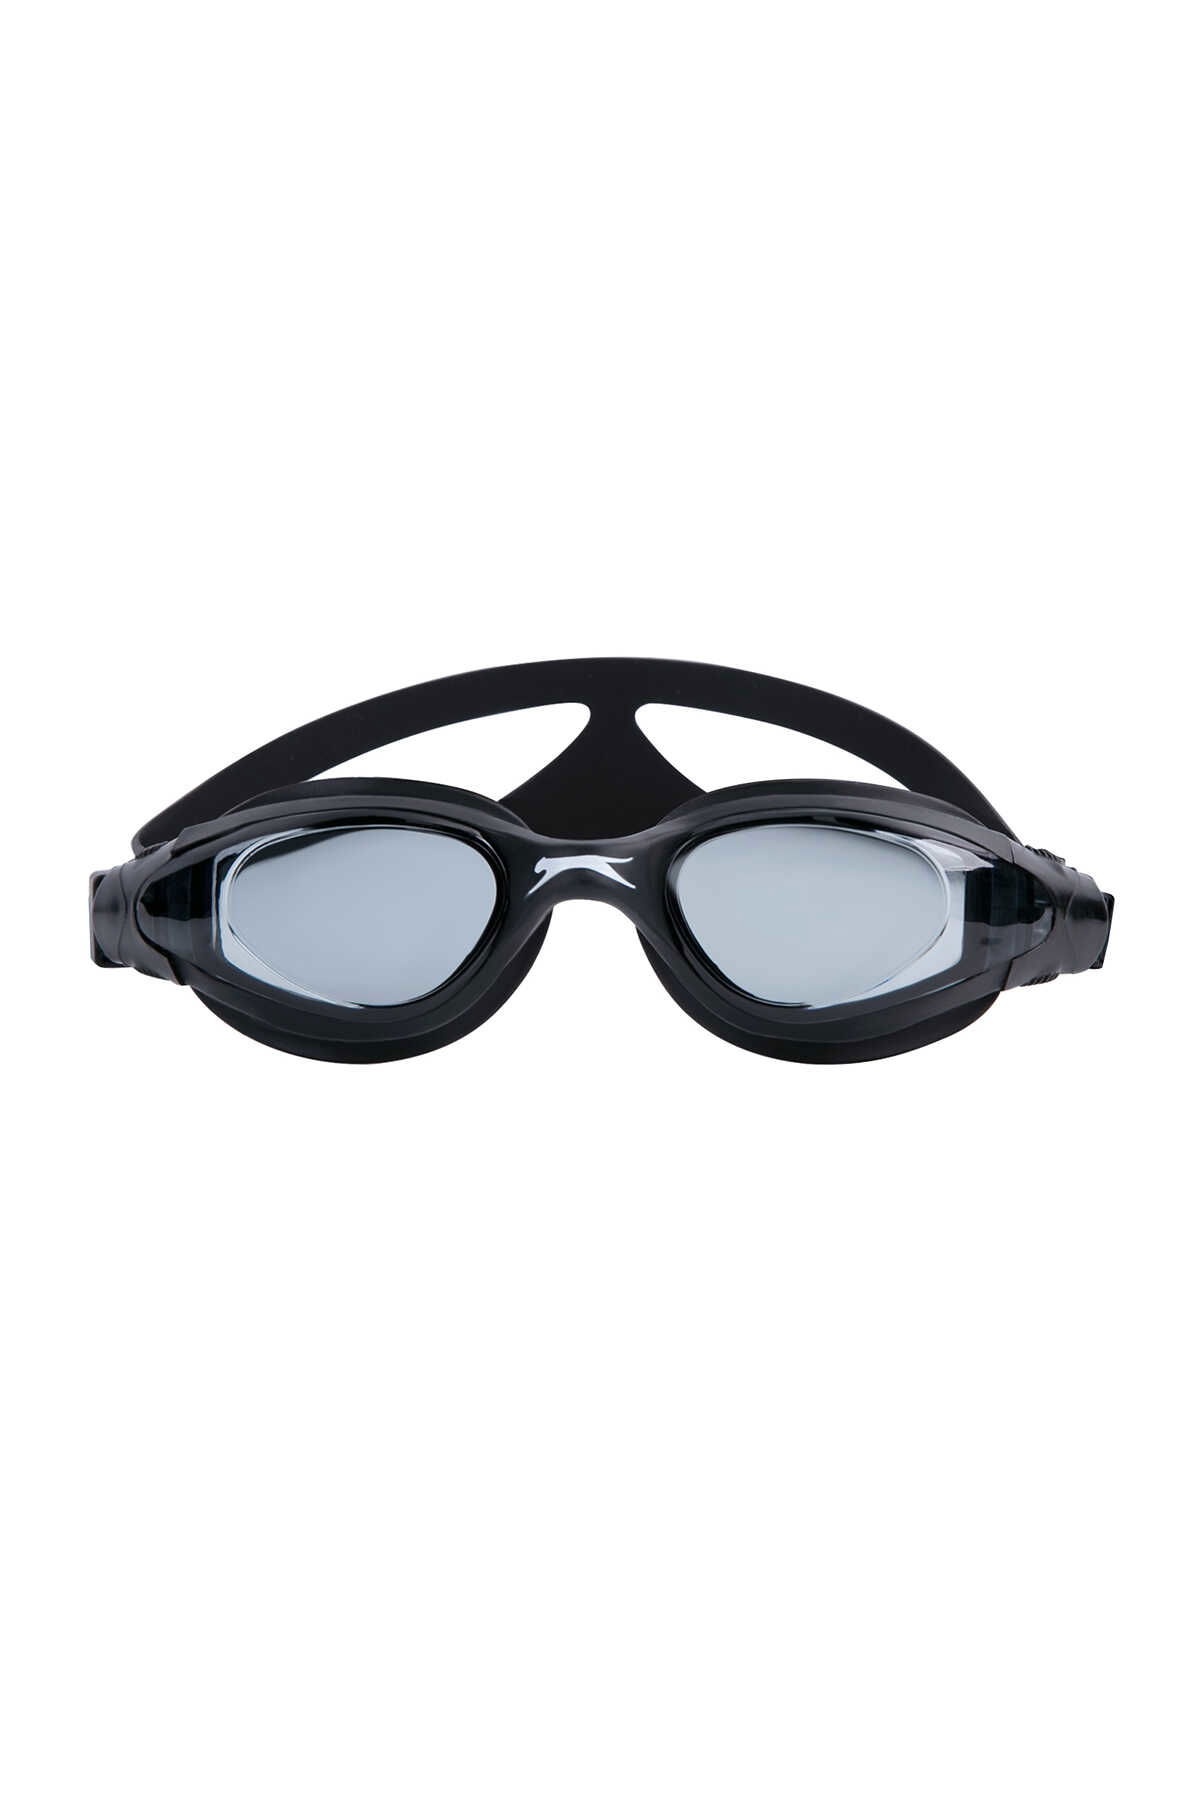 Slazenger - Slazenger Aero GS16 Unisex Çocuk Yüzücü Gözlüğü Siyah